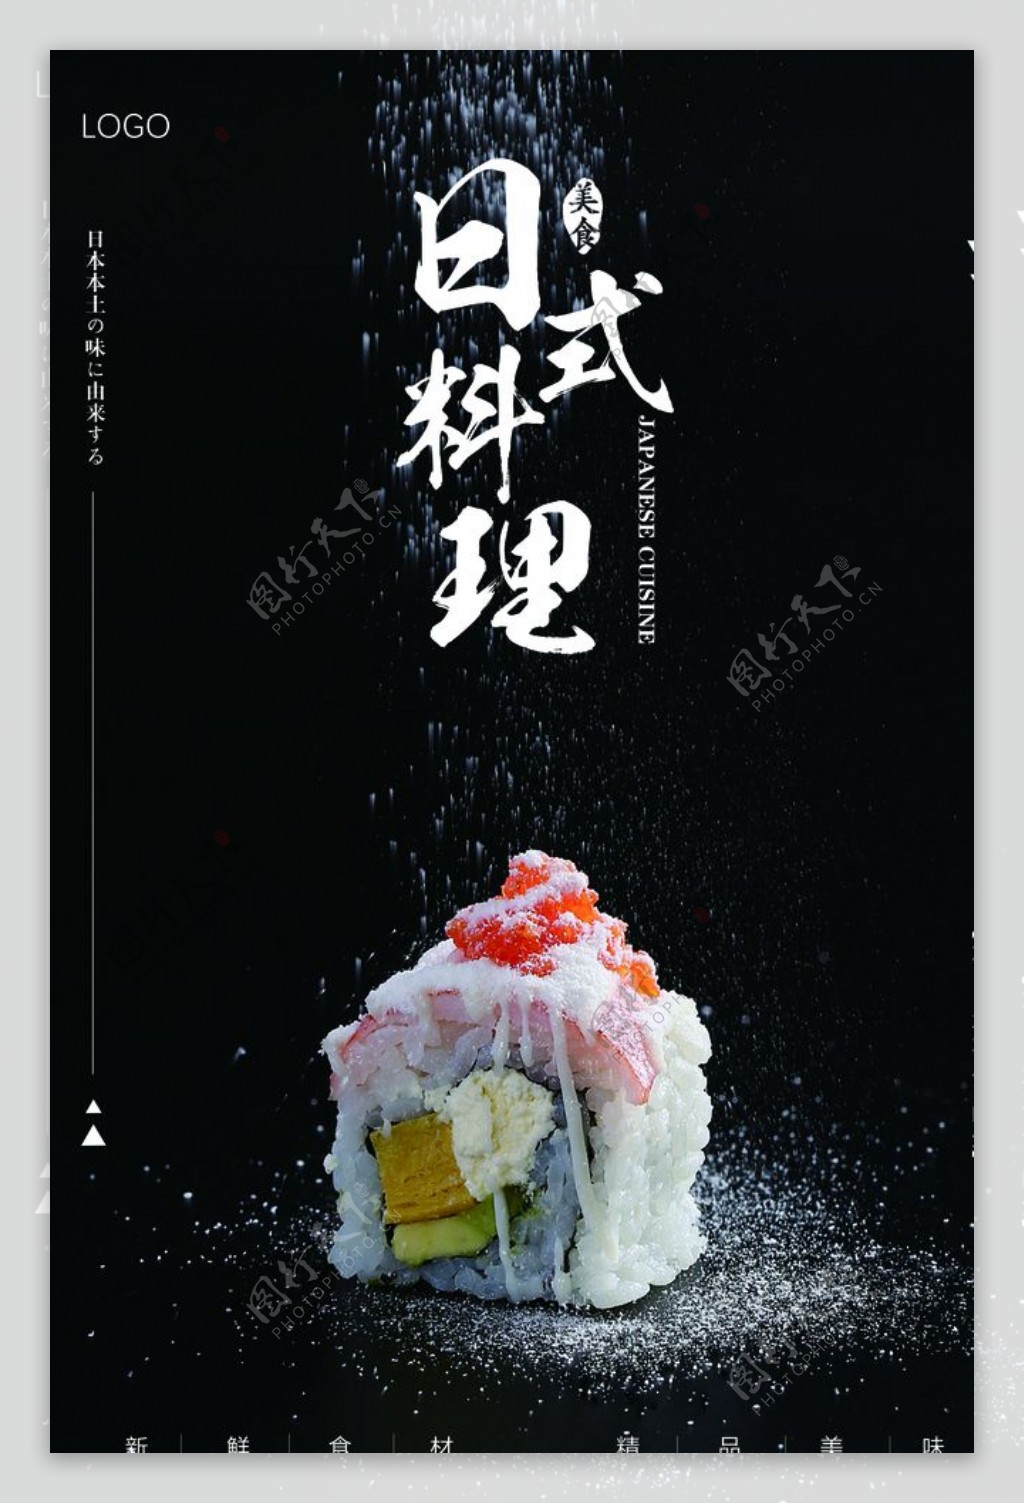 日系料理海报图片